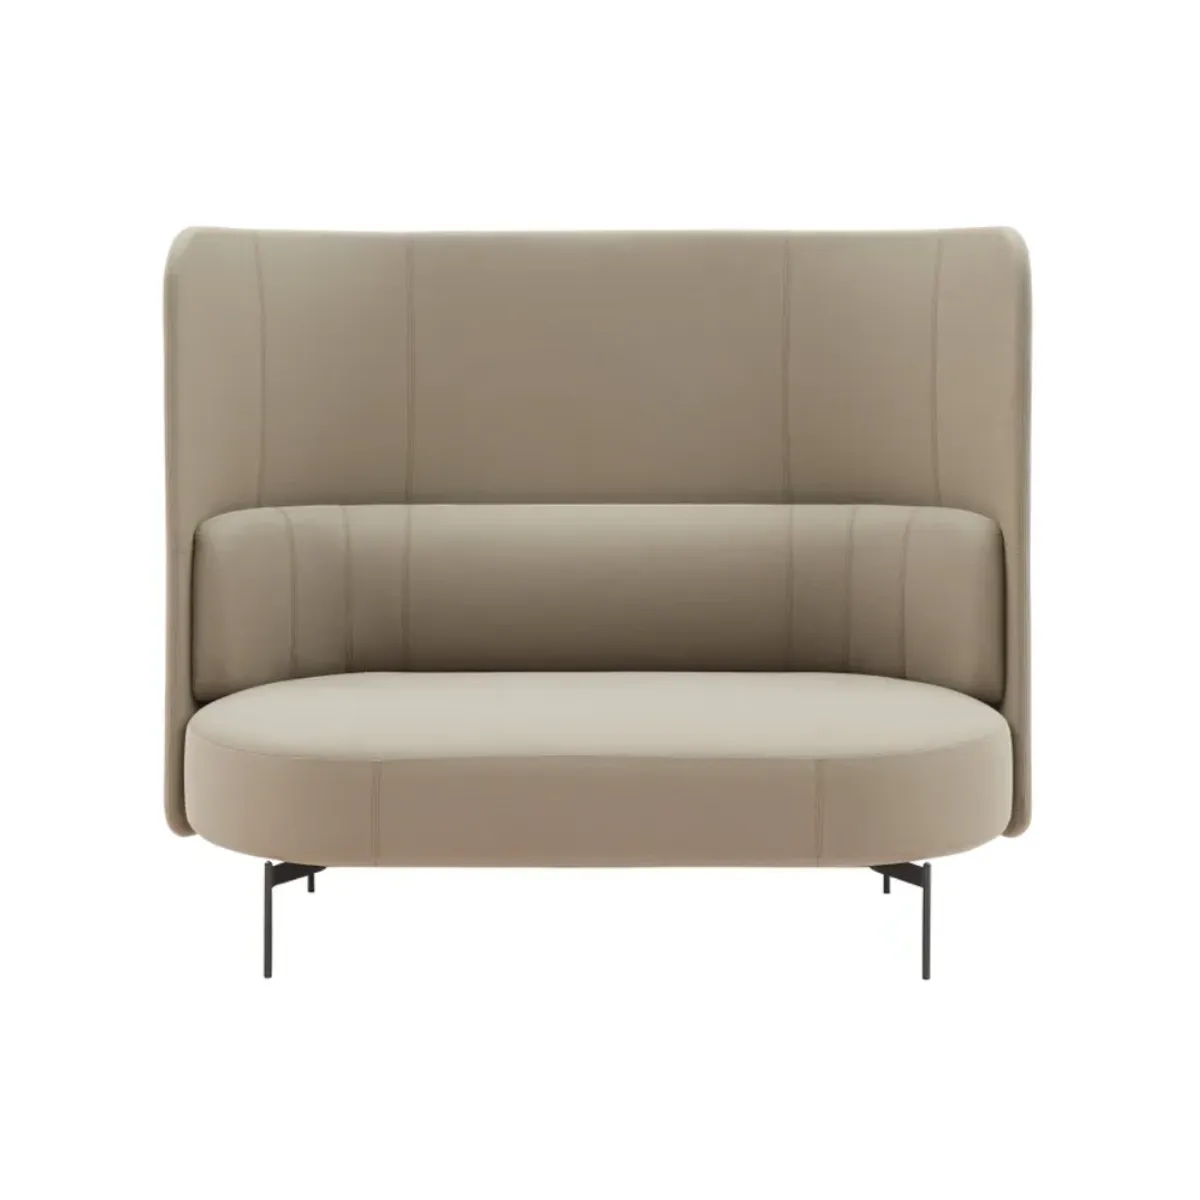 Fenton sofa 1